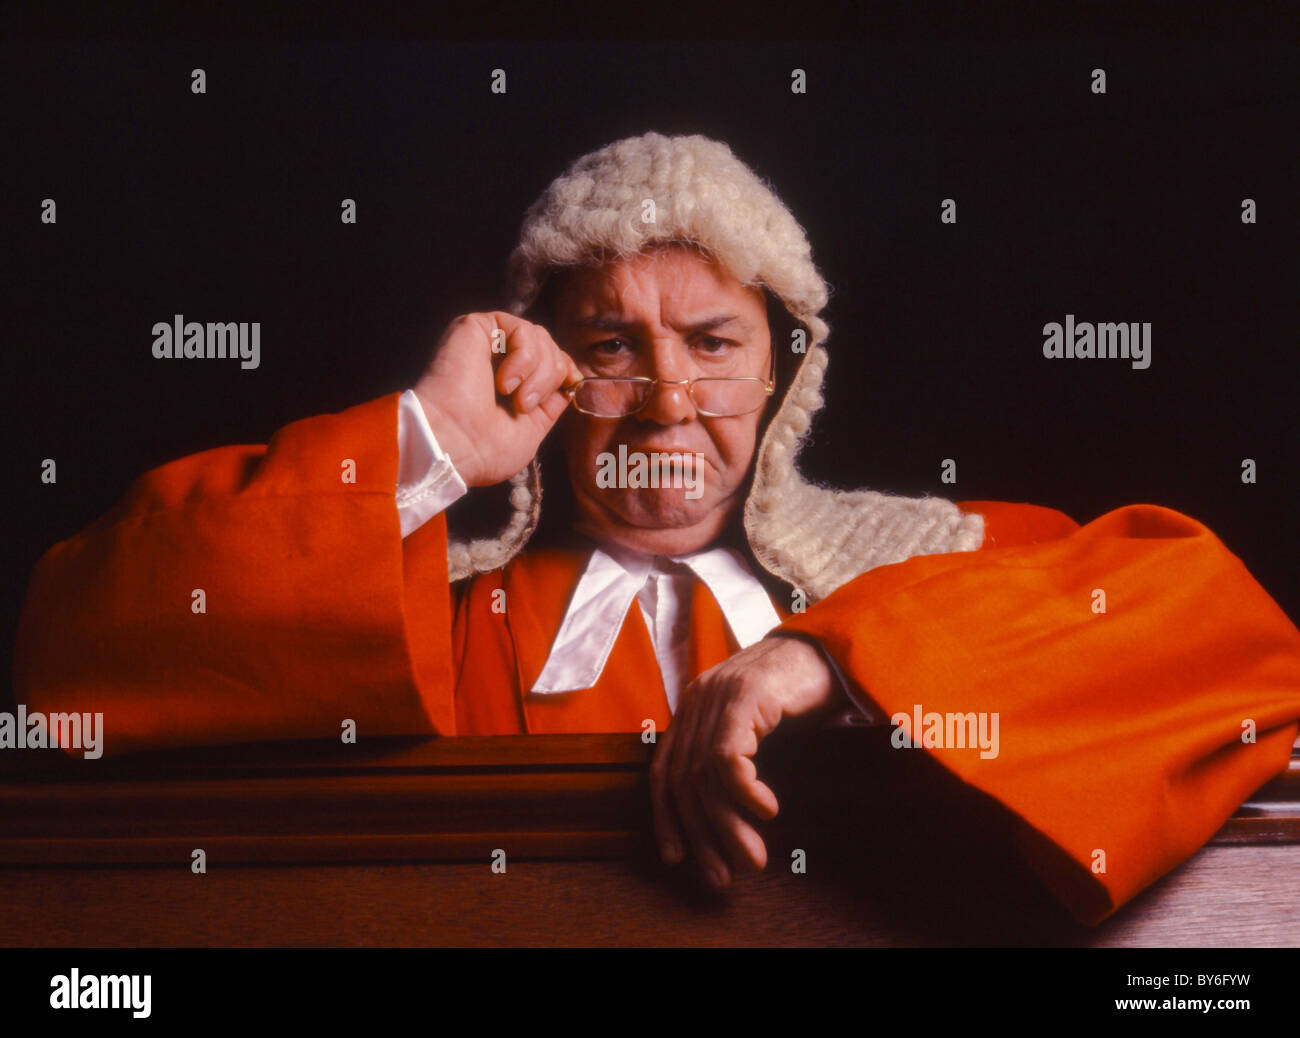 Juez de la Suprema Corte de túnica roja Foto de stock